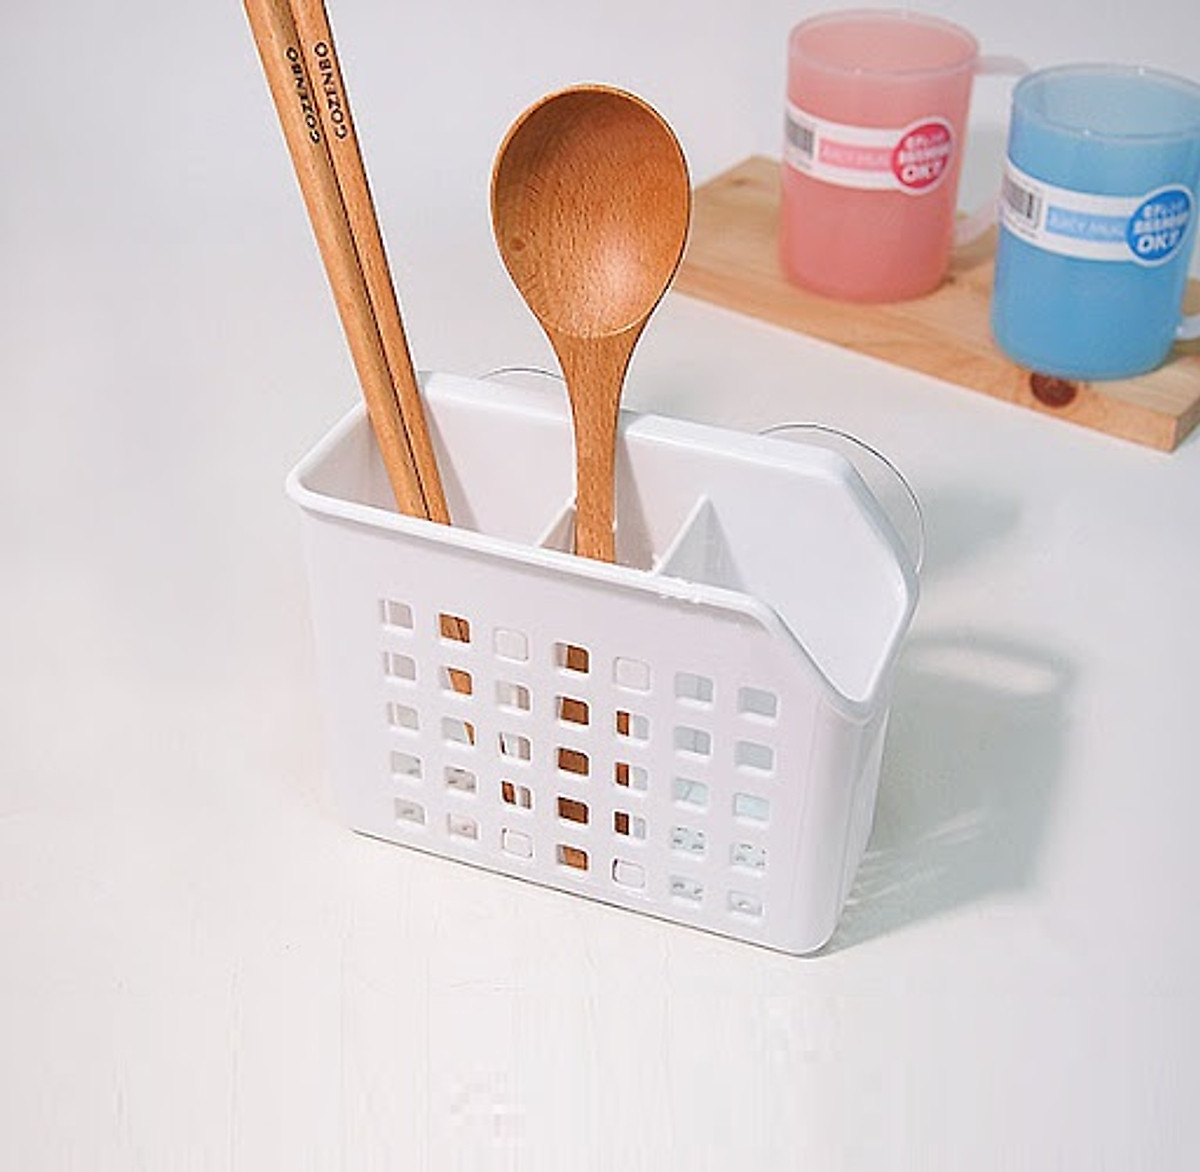 Giỏ nhựa đựng đũa, thìa có núm hít chân không, đem đến sự gọn gàng và ngăn nắp cho không gian nhà bếp - nội địa Nhật Bản 